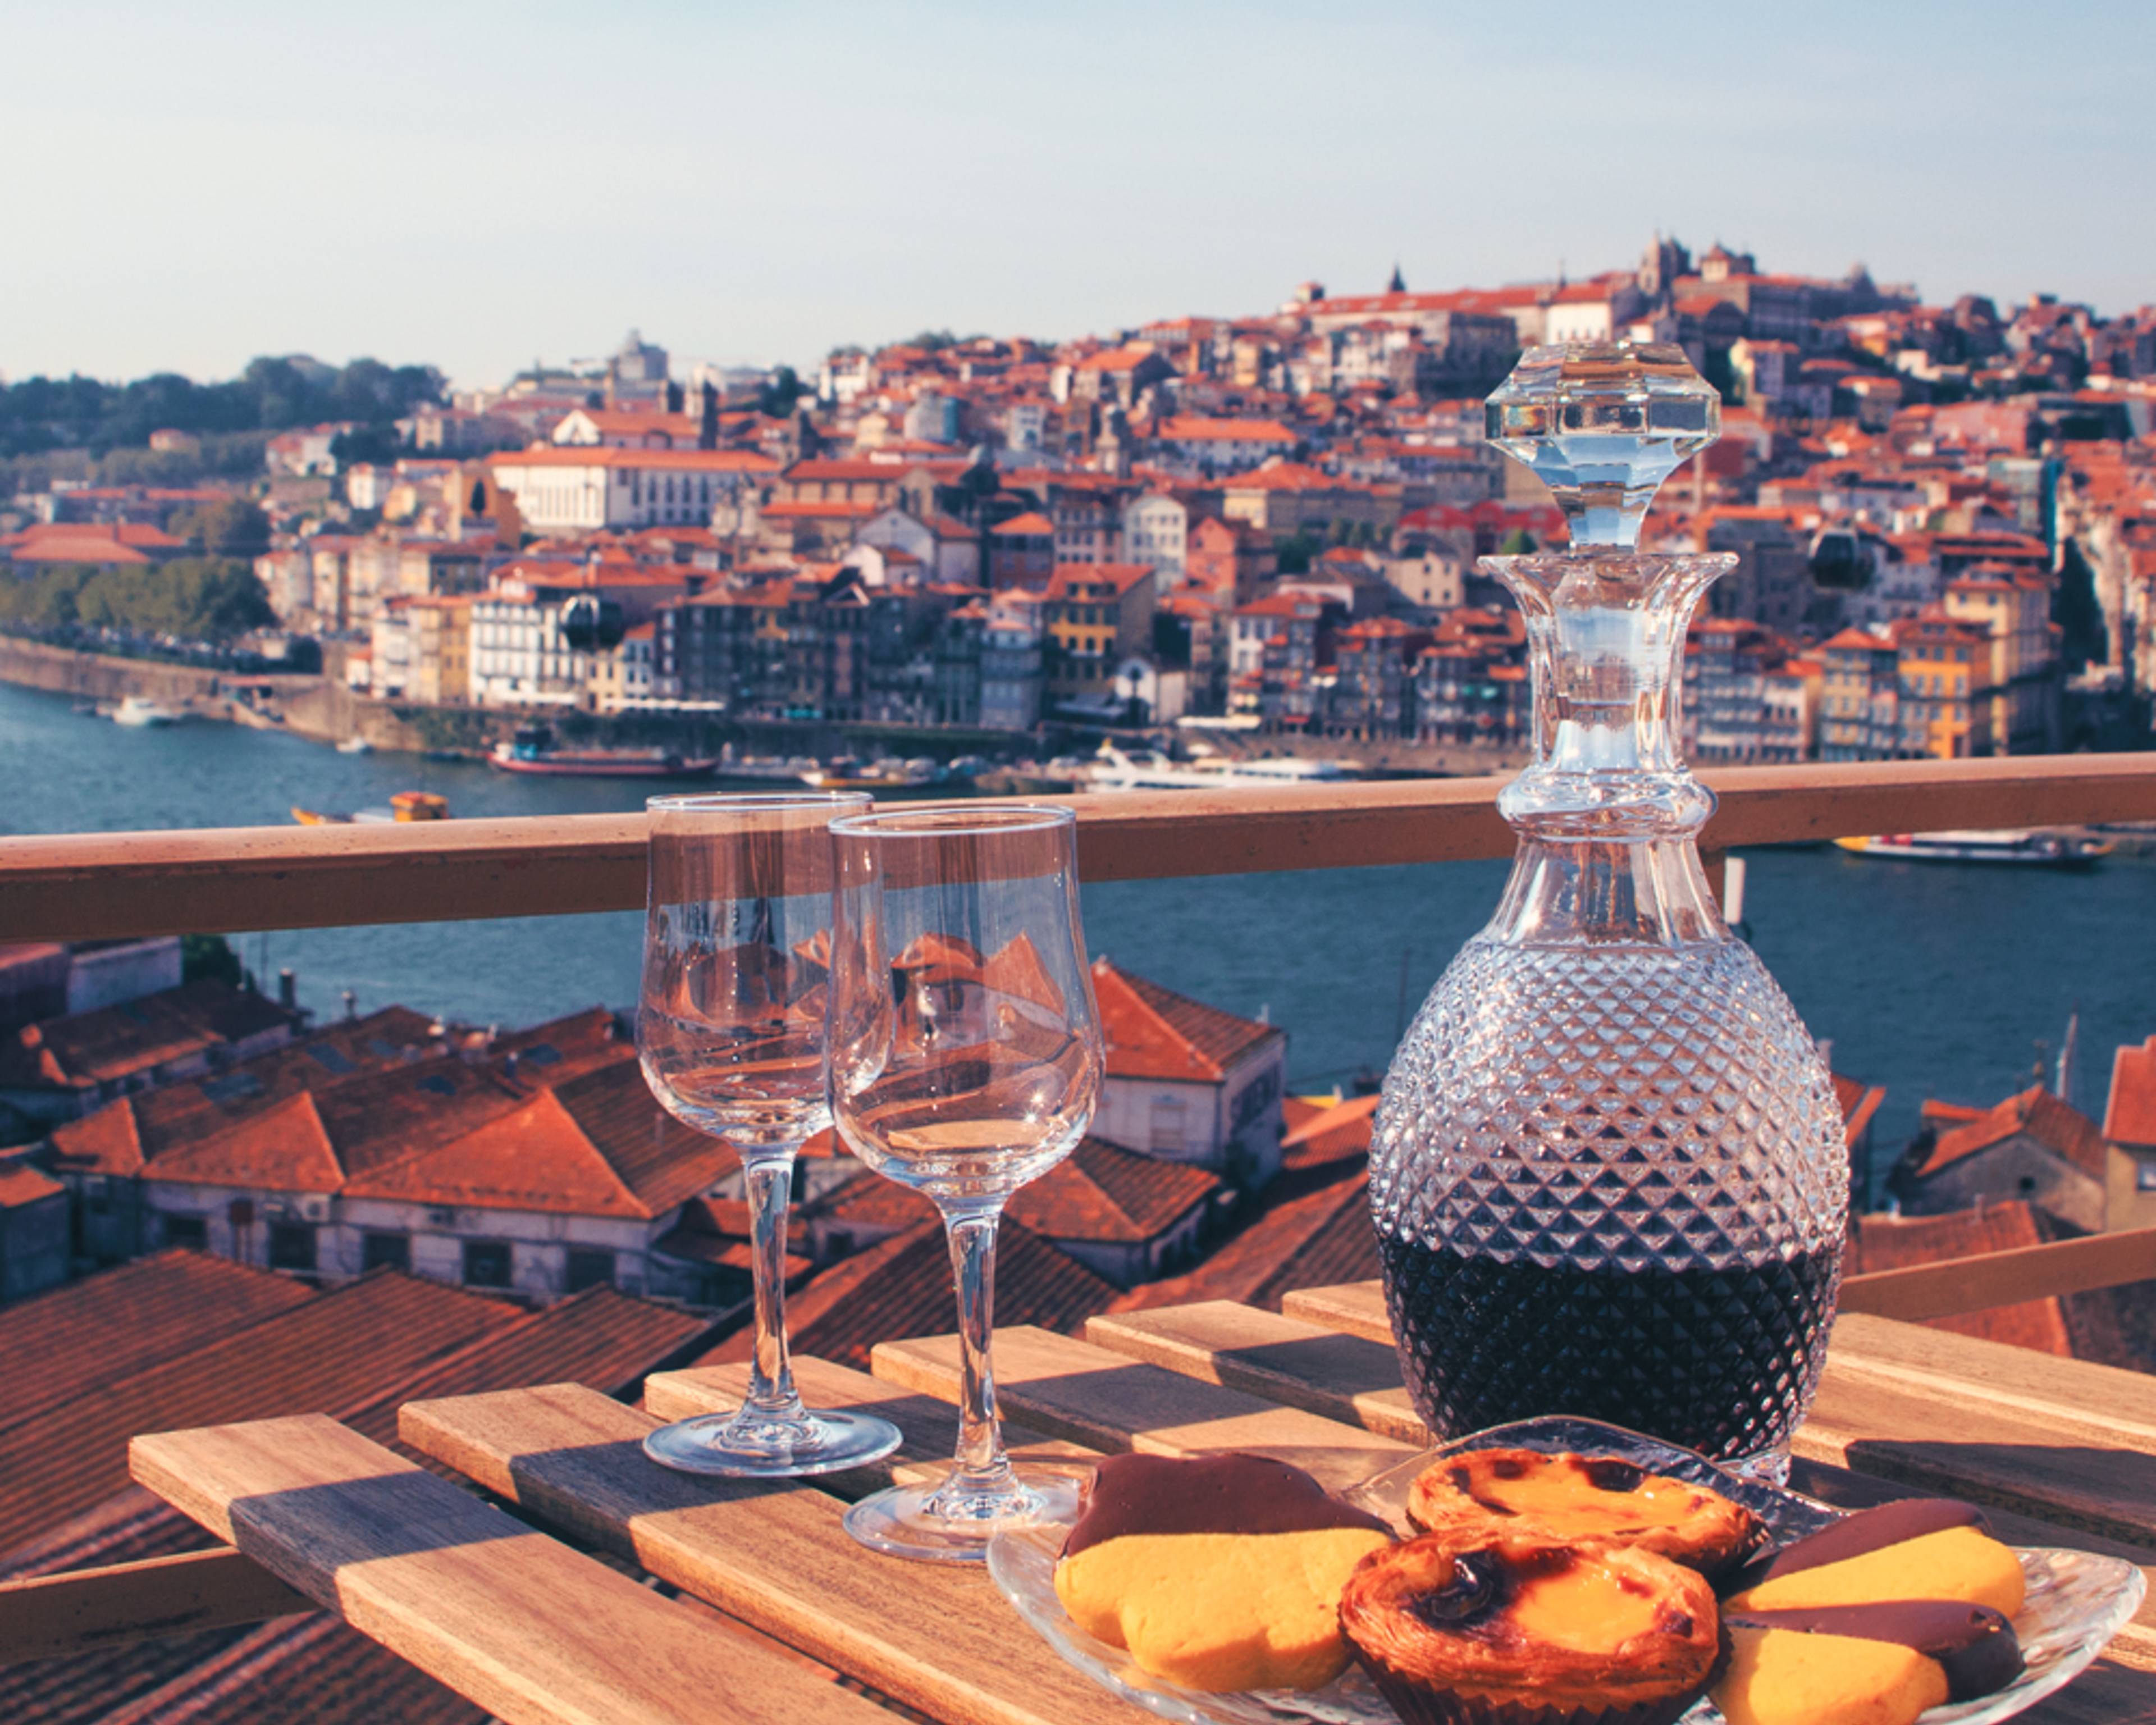 Rutas gastronómicas y enológicas por Portugal - Viajes gastronómicos 100% a medida